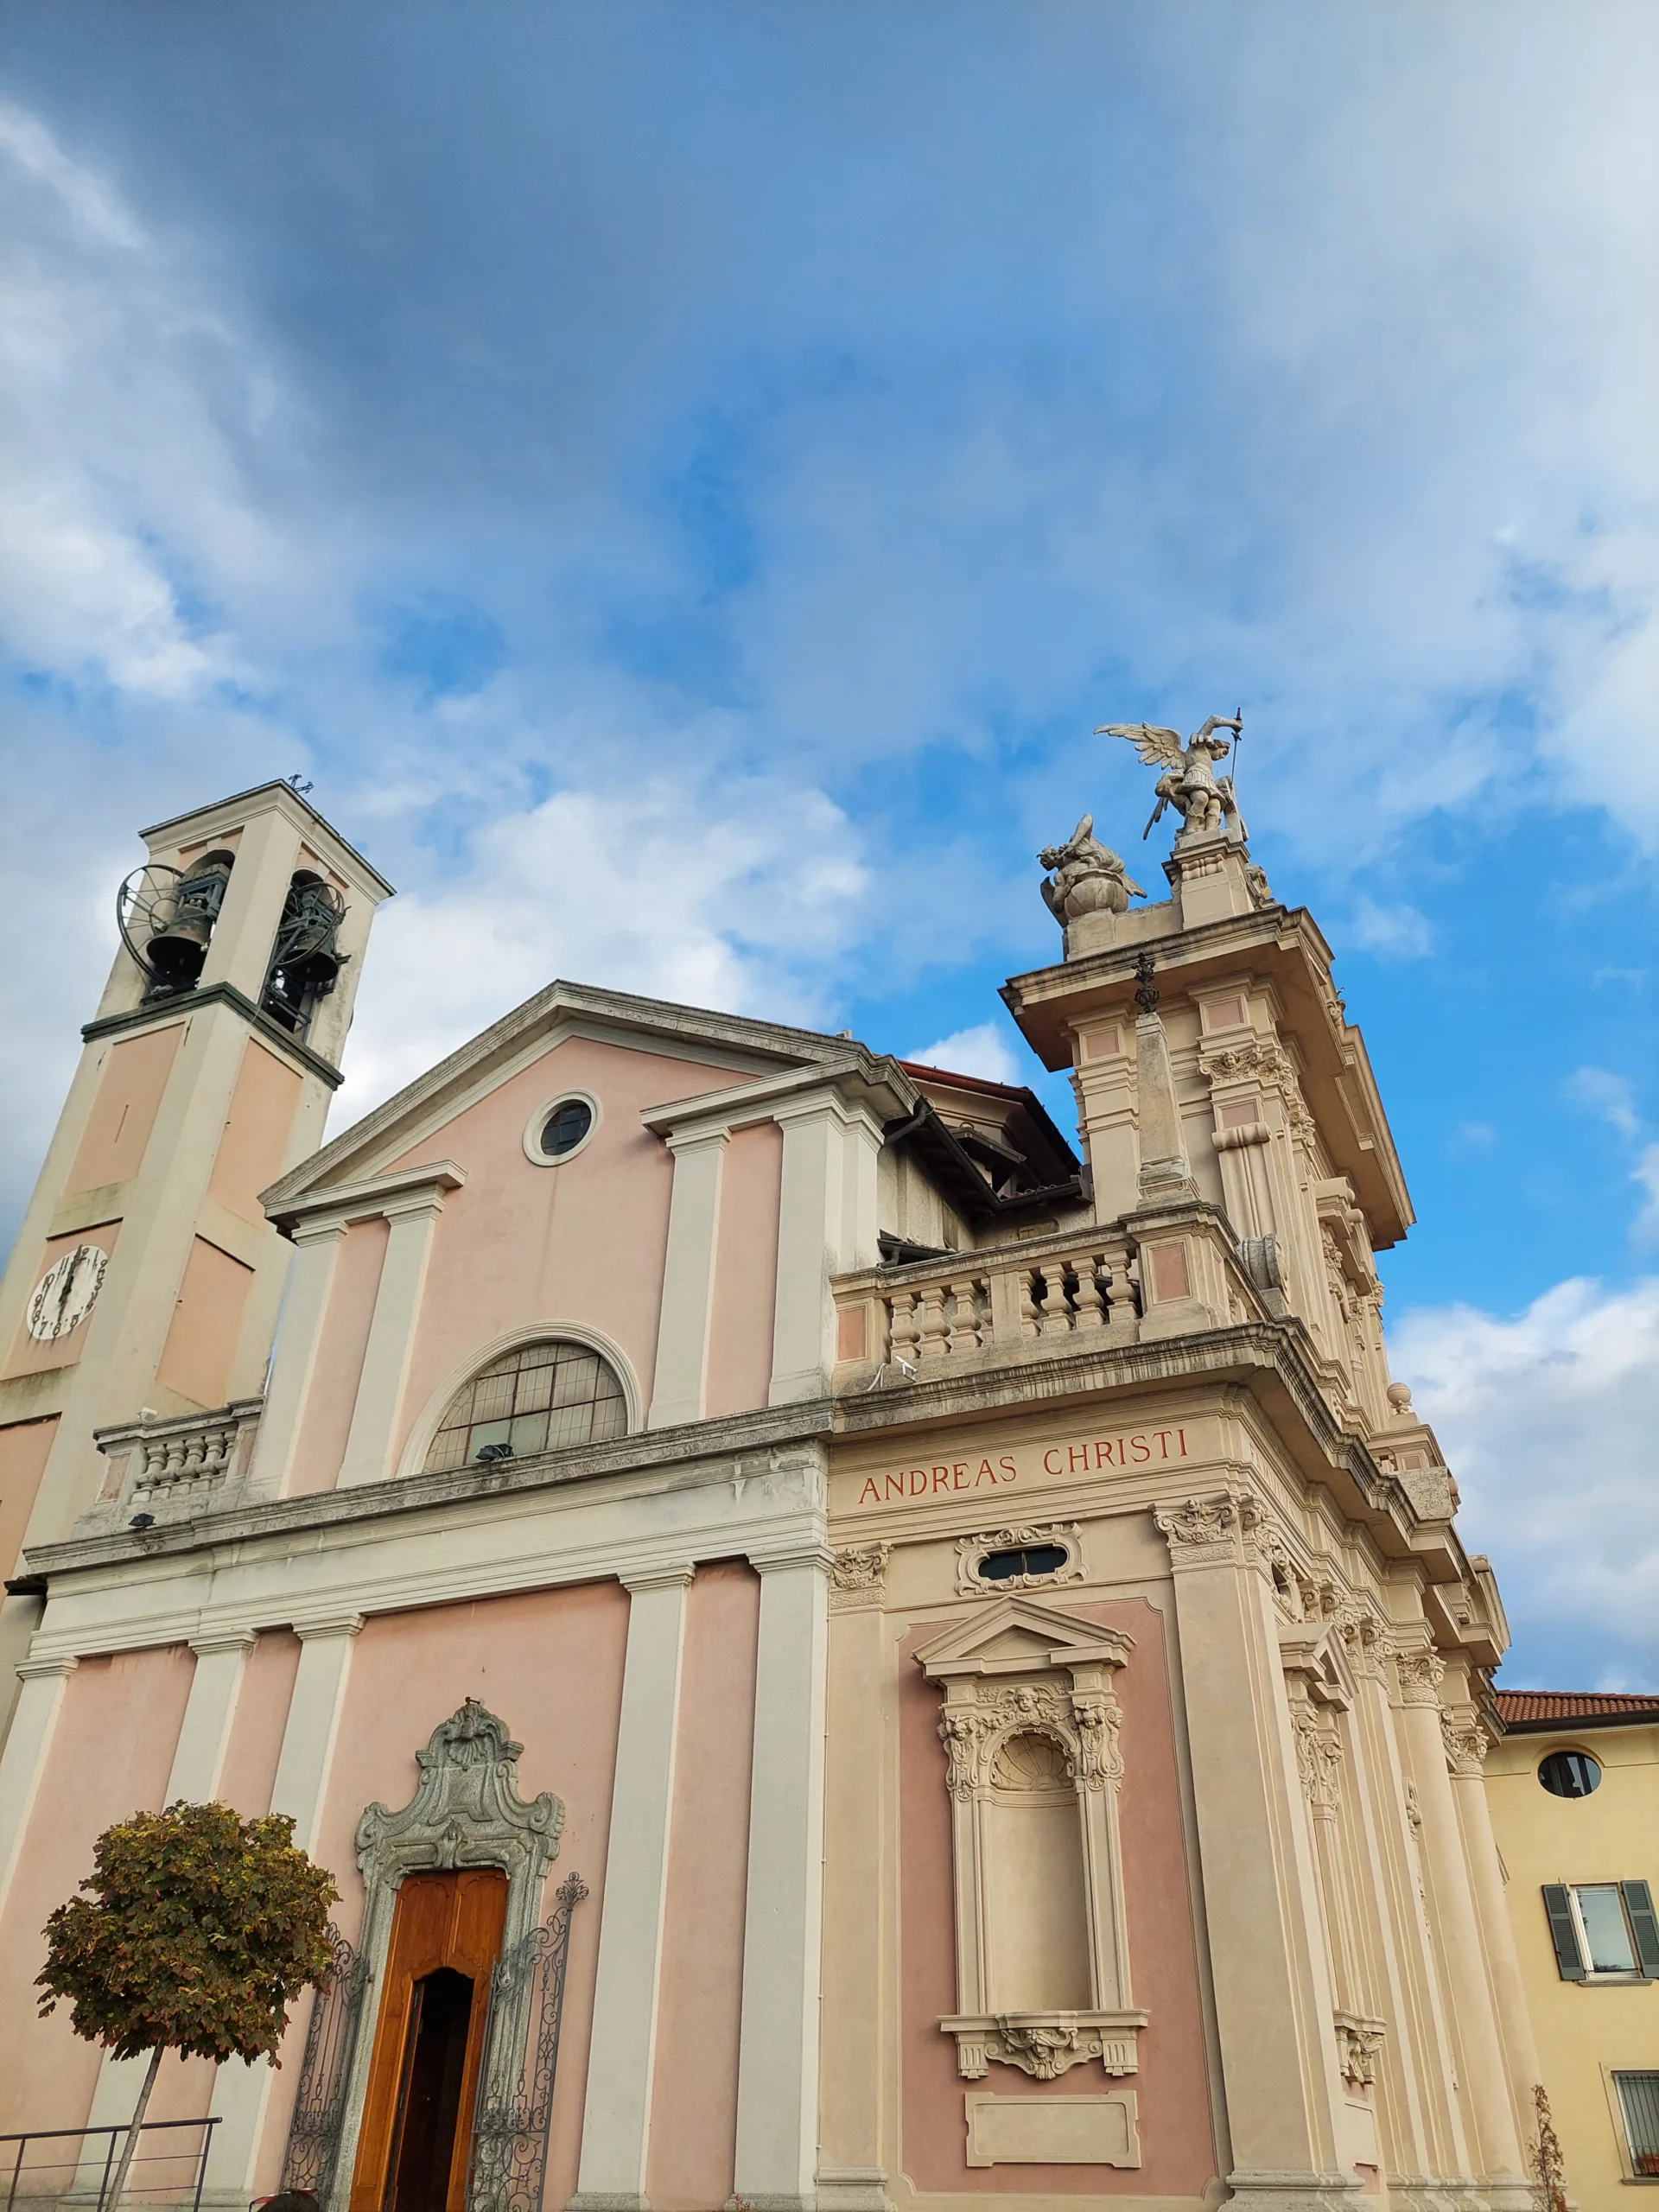 Η καθολική Εκκλησία Chiesa di Sant'Andrea Apostolo στο Brunate, Κόμο, Ιταλία.